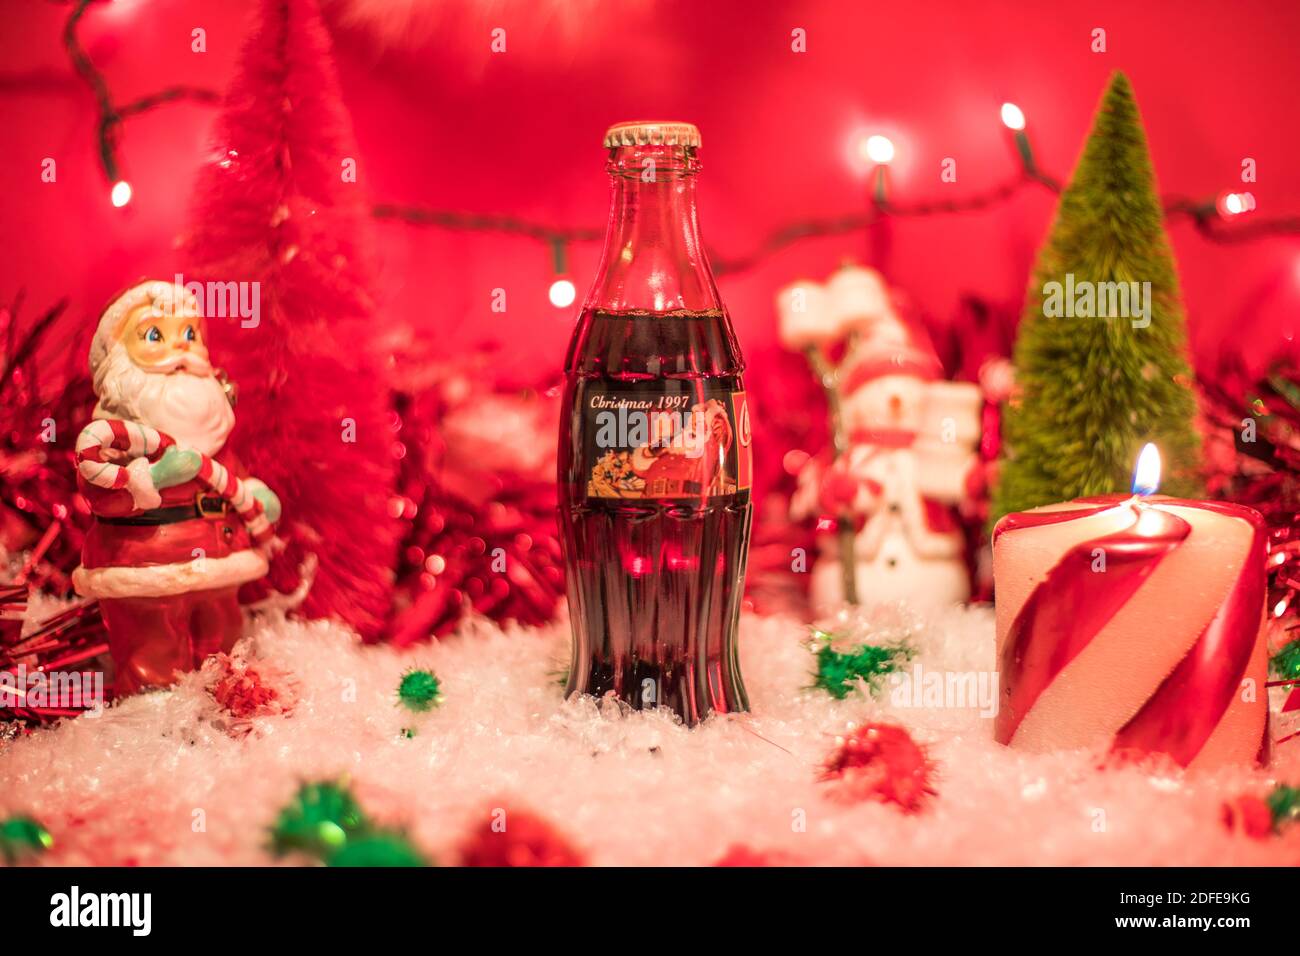 Augusta, GA USA - 12 03 20: Noël 1997 verre Coca Cola bouteille de retour  et scène de vacances Santa rayed bougie Photo Stock - Alamy